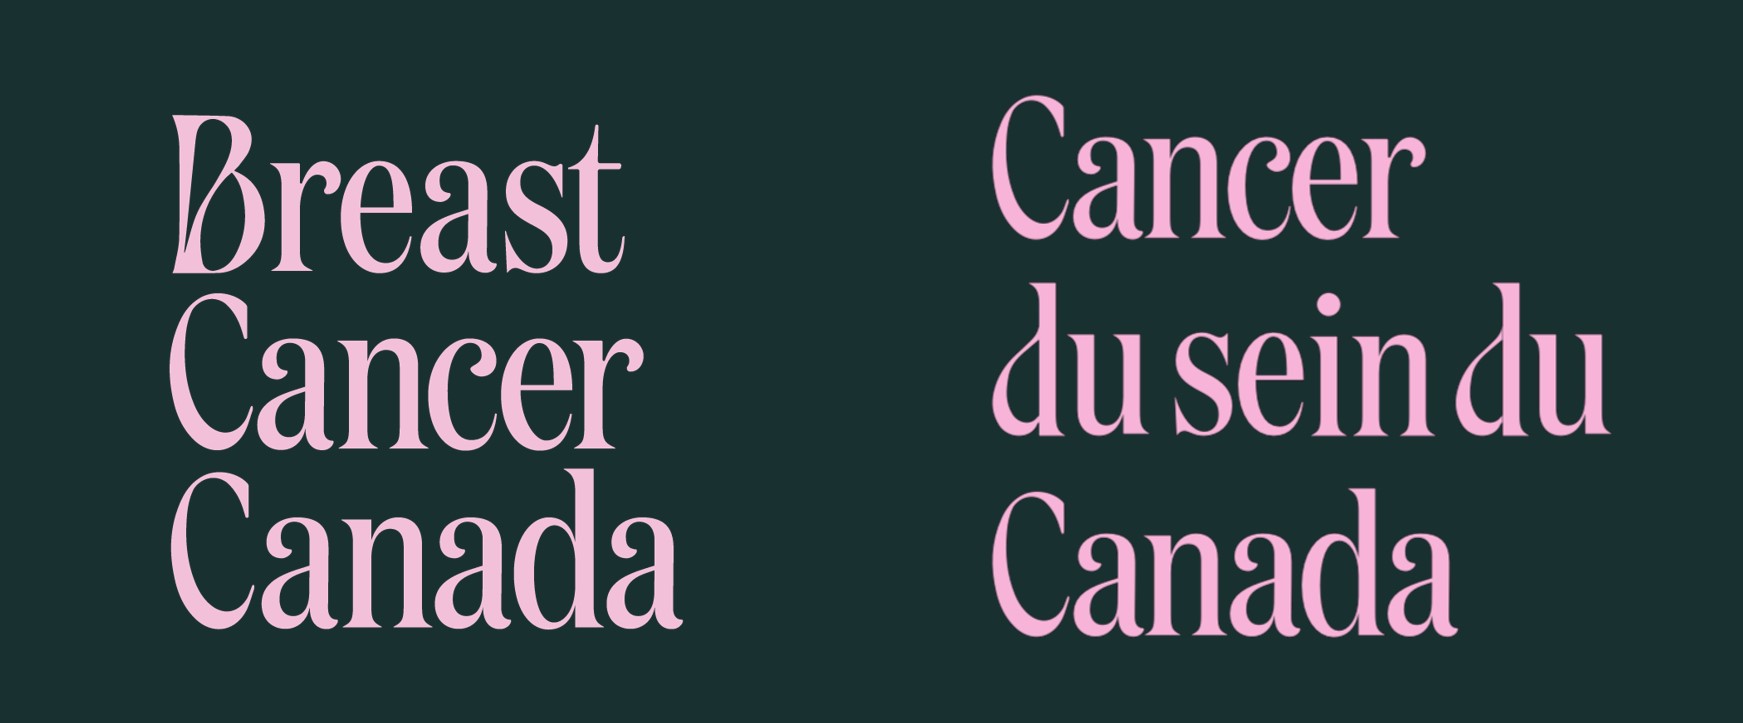 Breast Cancer Canada Logo